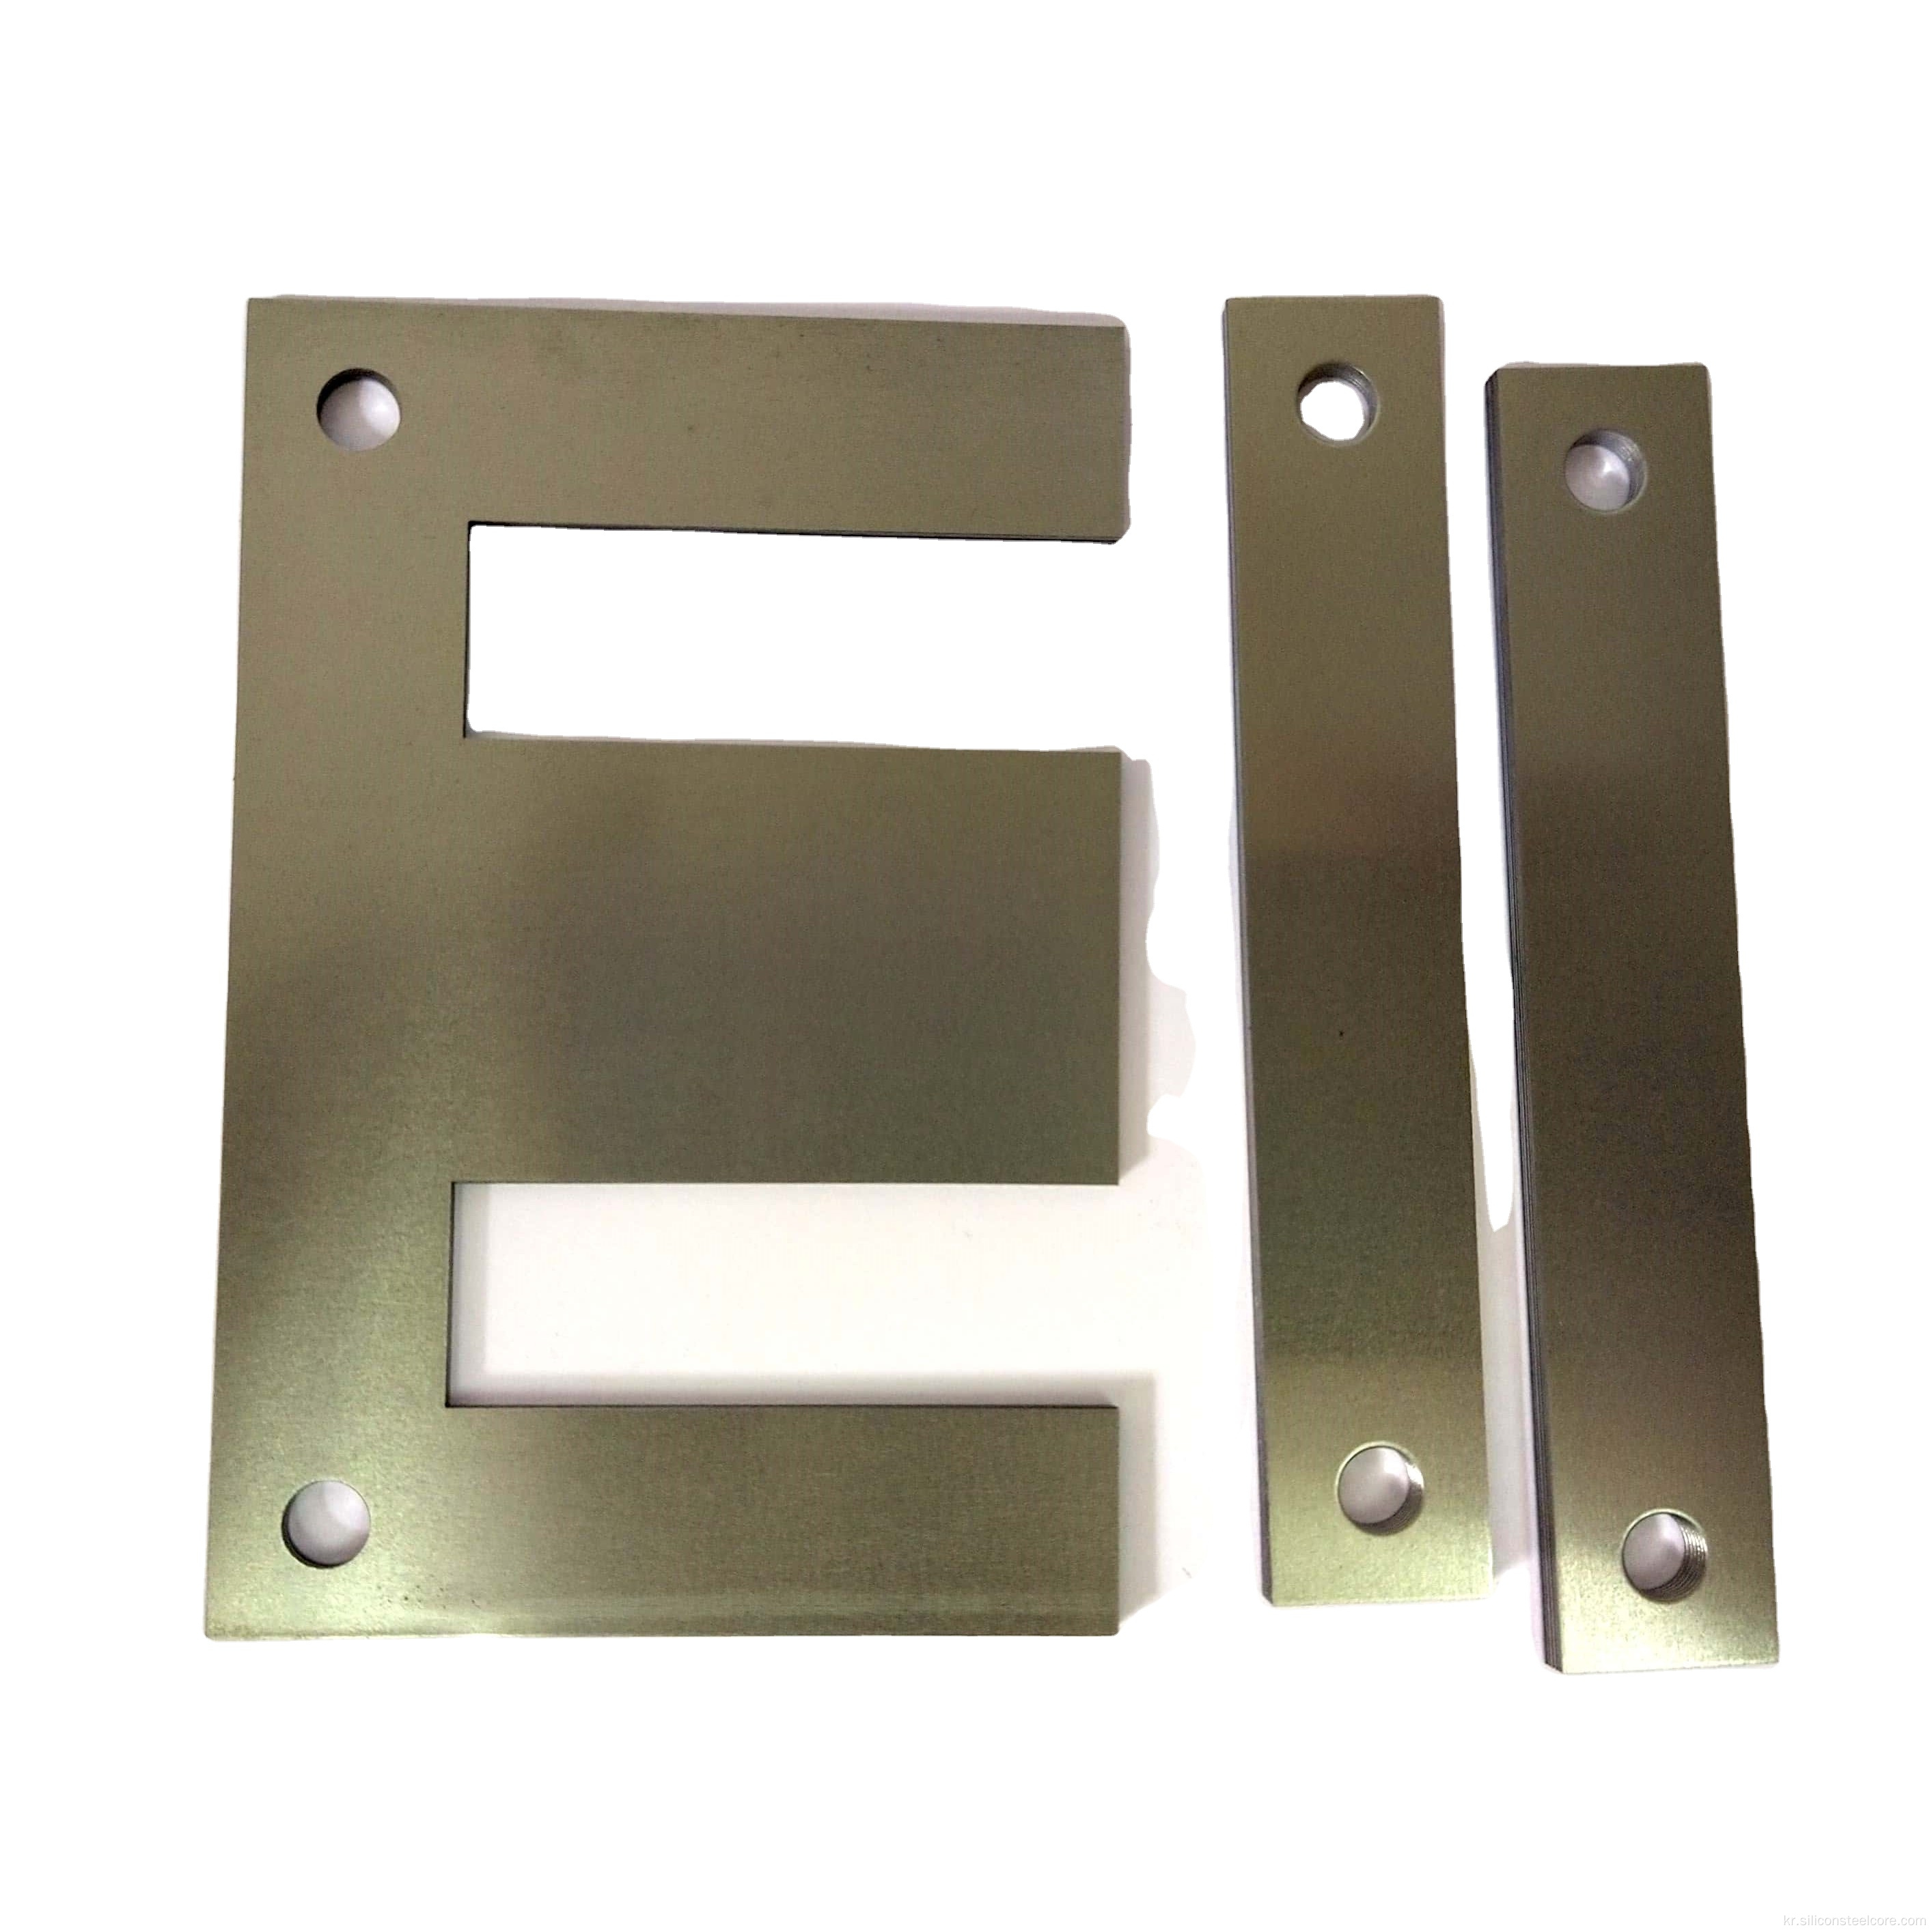 변압기 라미네이션 0.35mm EI 실리콘 스틸 코어